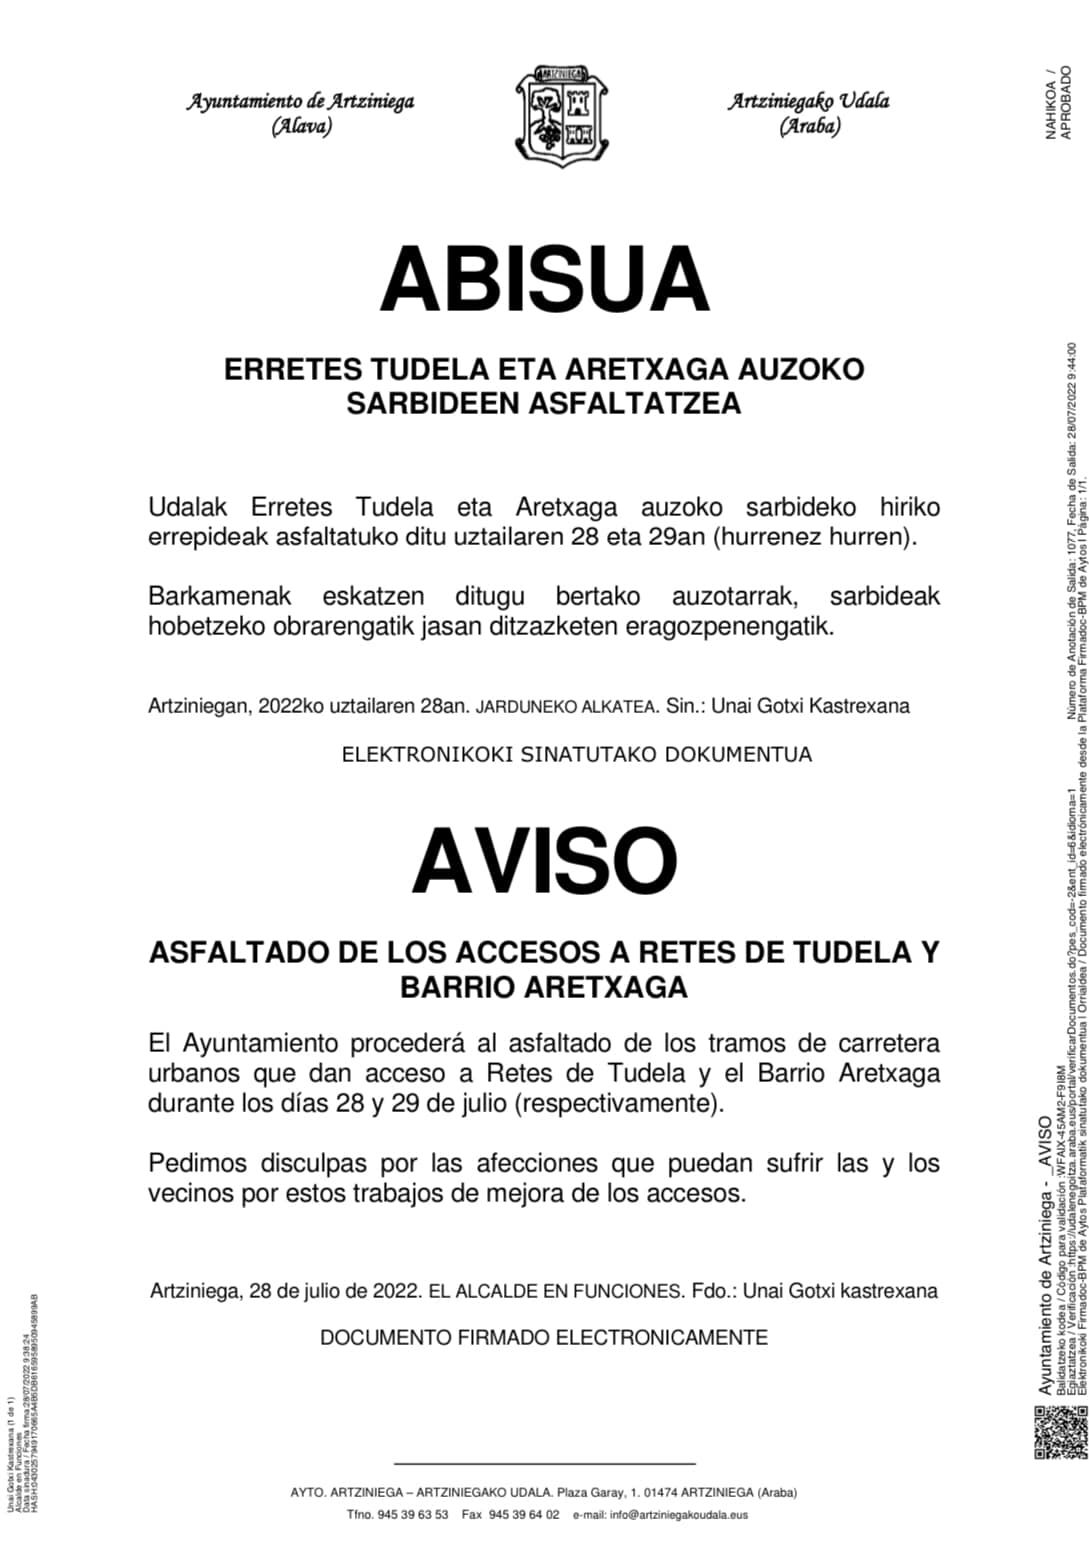 AVISO: Asfaltado de los accesos a Retes de Tudela y Aretxaga